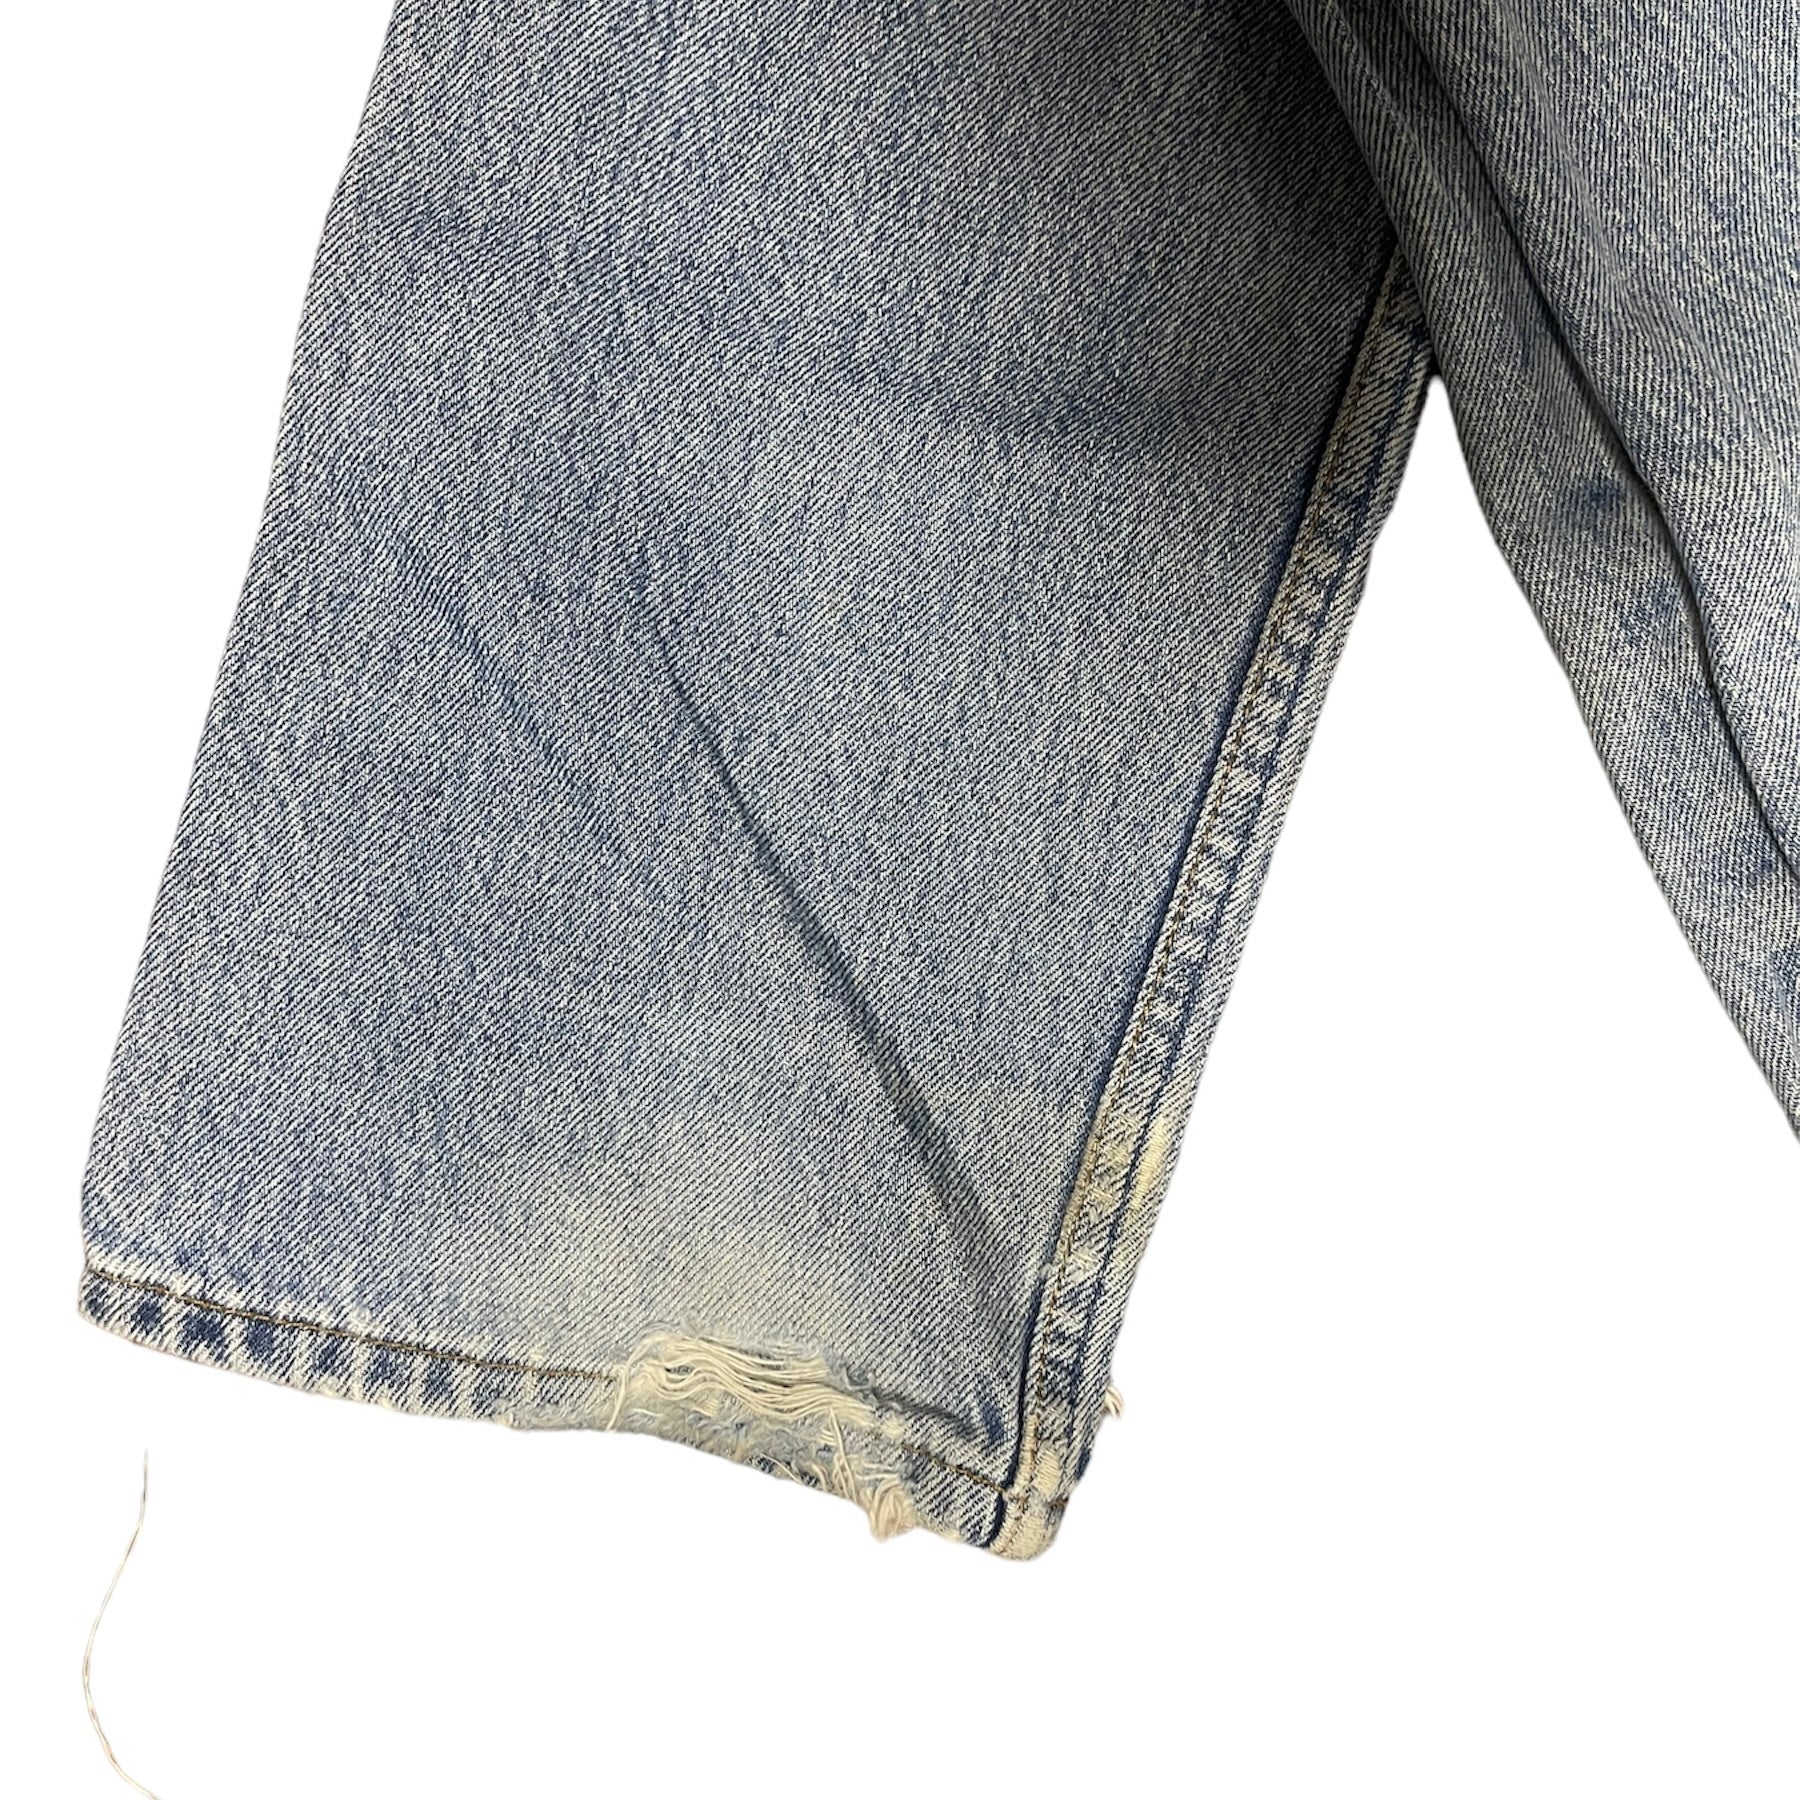 Vintage Levis 501 Blue Jeans (W27/L30)